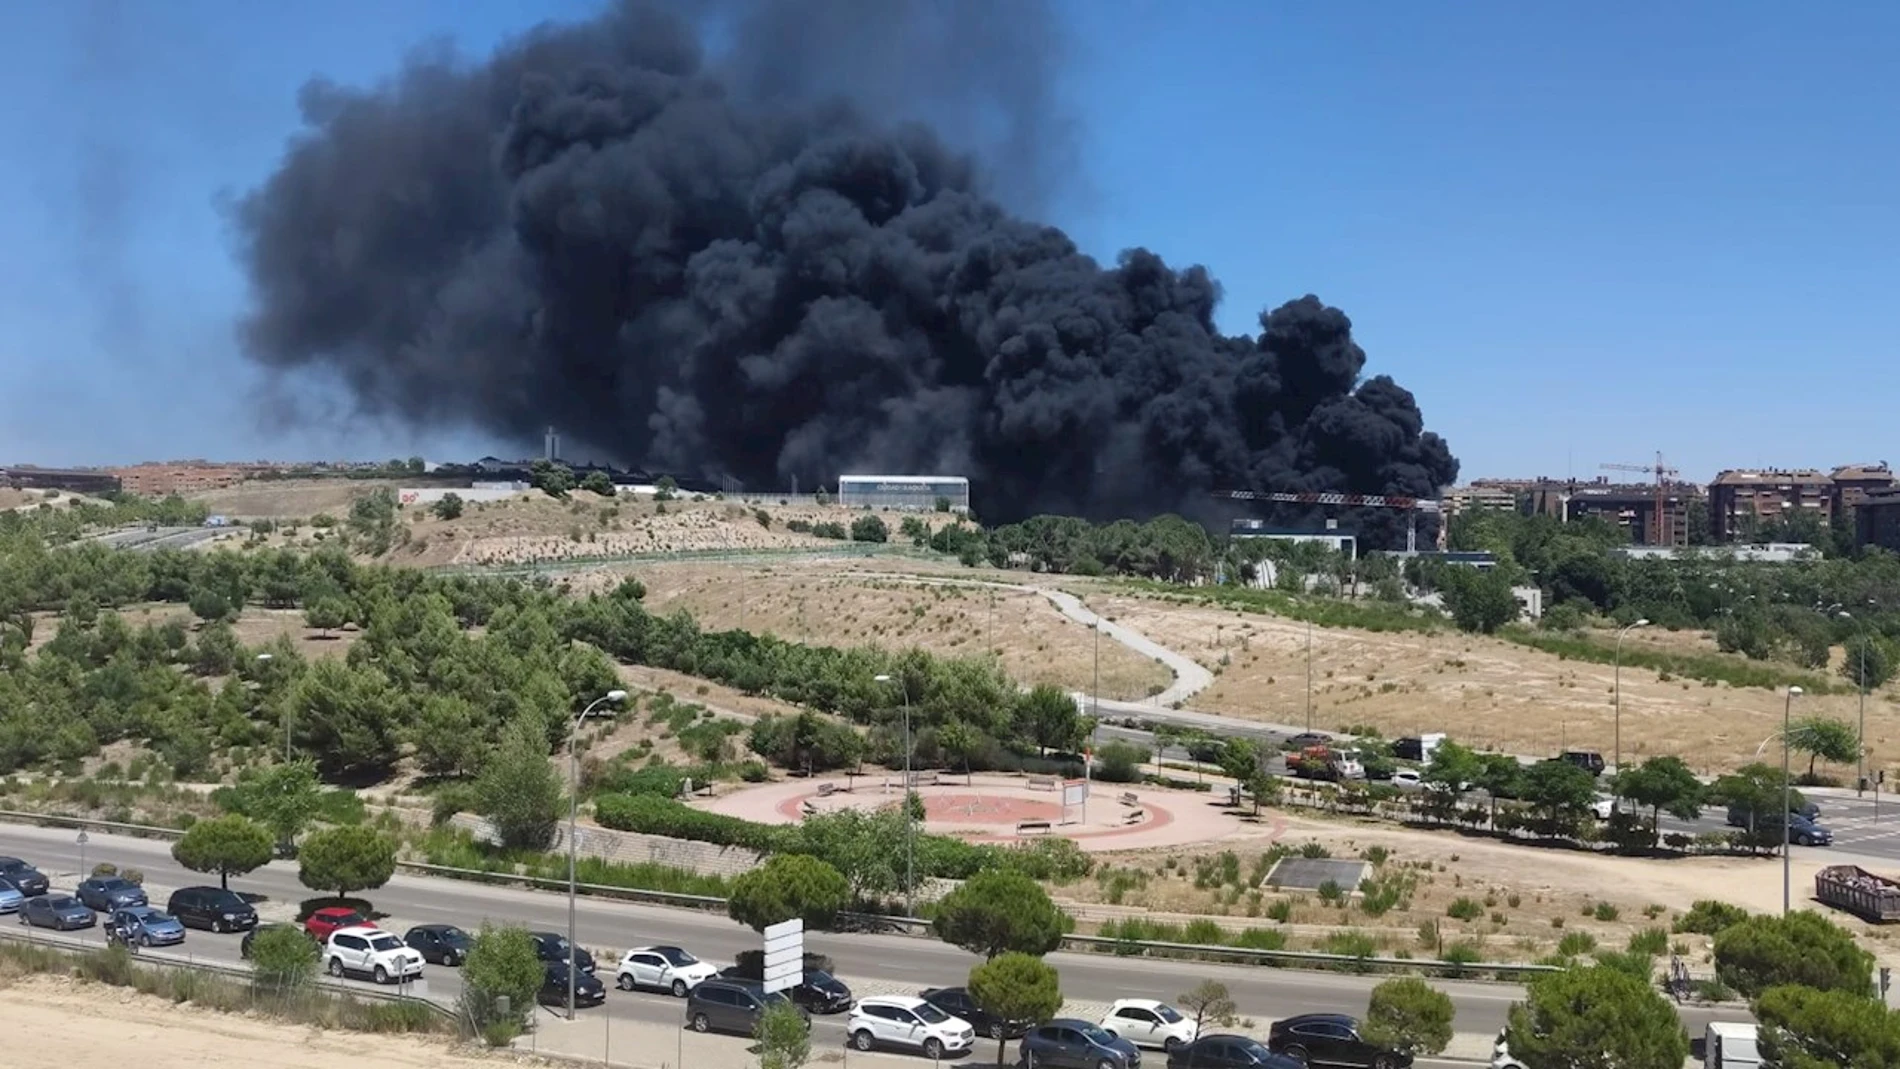 Columna de humo del incendio originado este viernes en un edificio de uso comercial en construcción, en la zona de Mirasierra, en el que han ardido plásticos